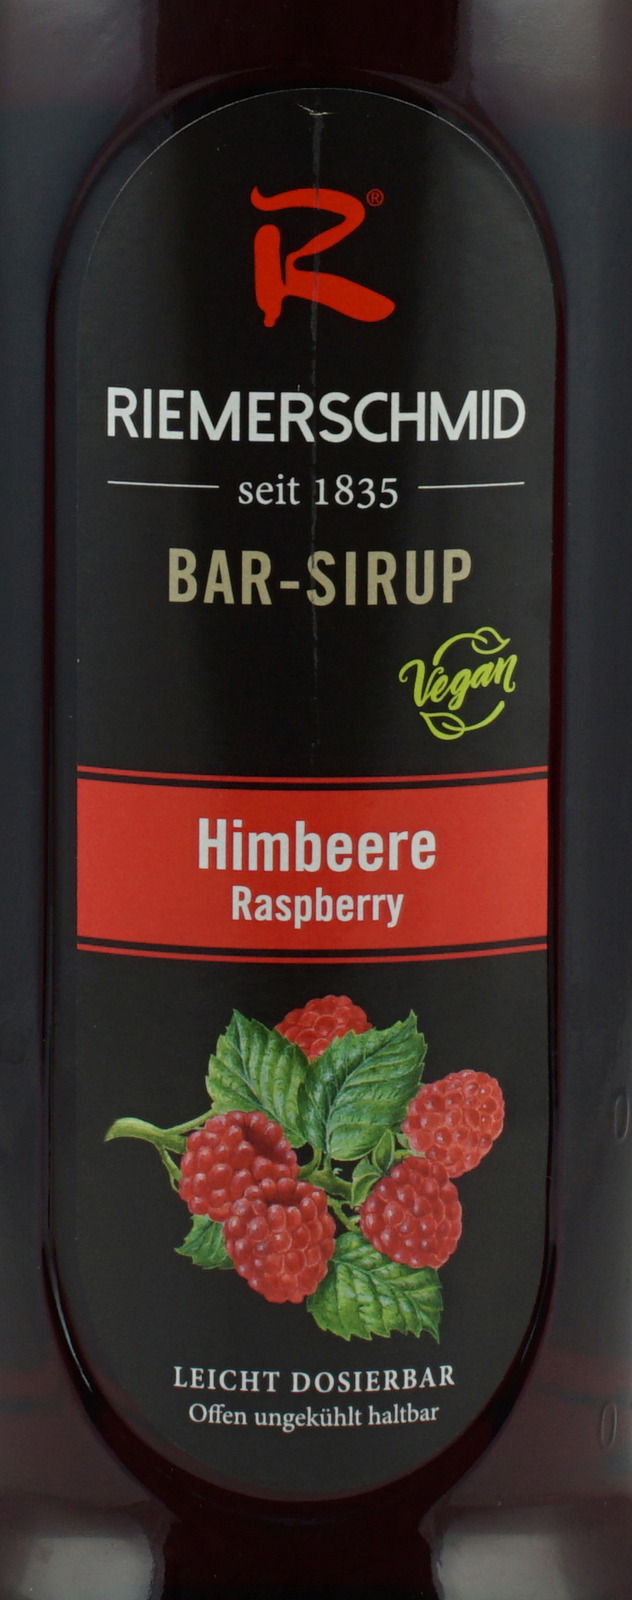 Riemerschmid Raspberry (Himbeer) Bar Sirup hier bei uns im Shop